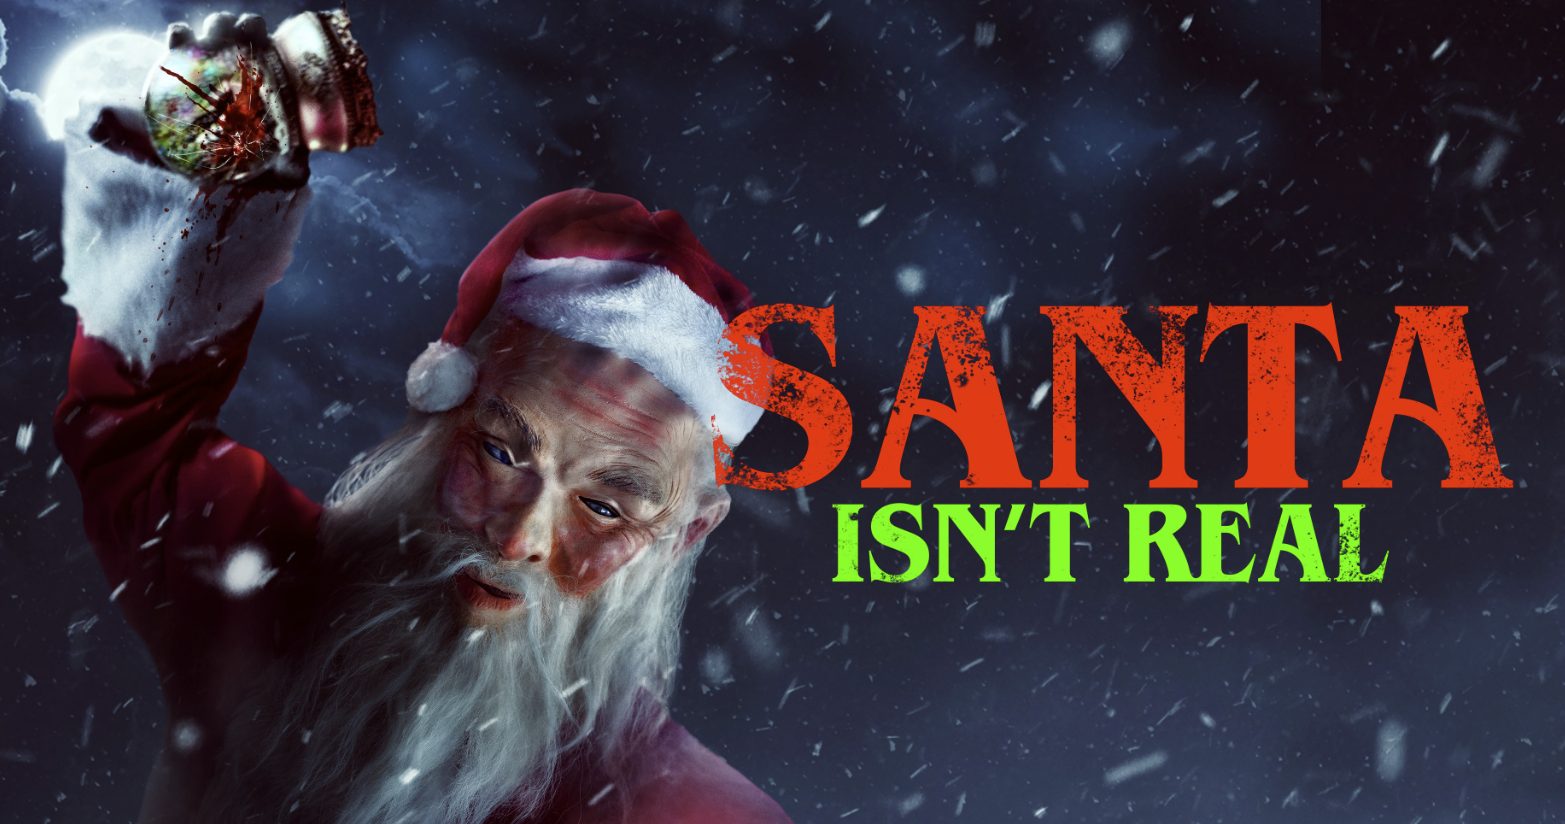 Santa Isn't Real